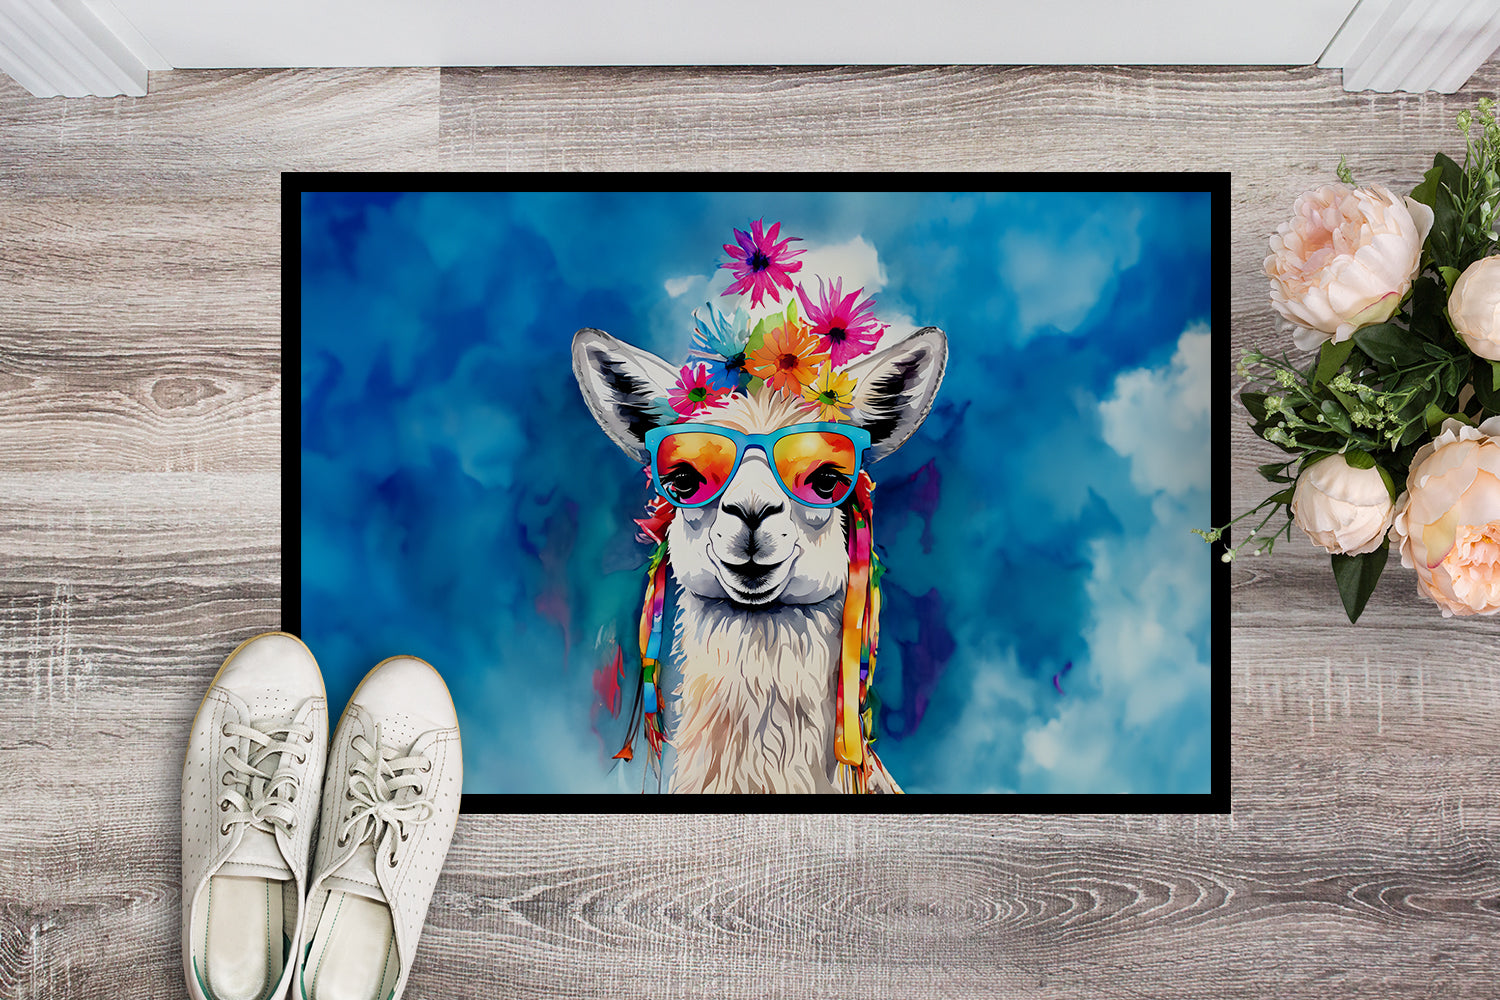 Buy this Hippie Animal Llama Doormat